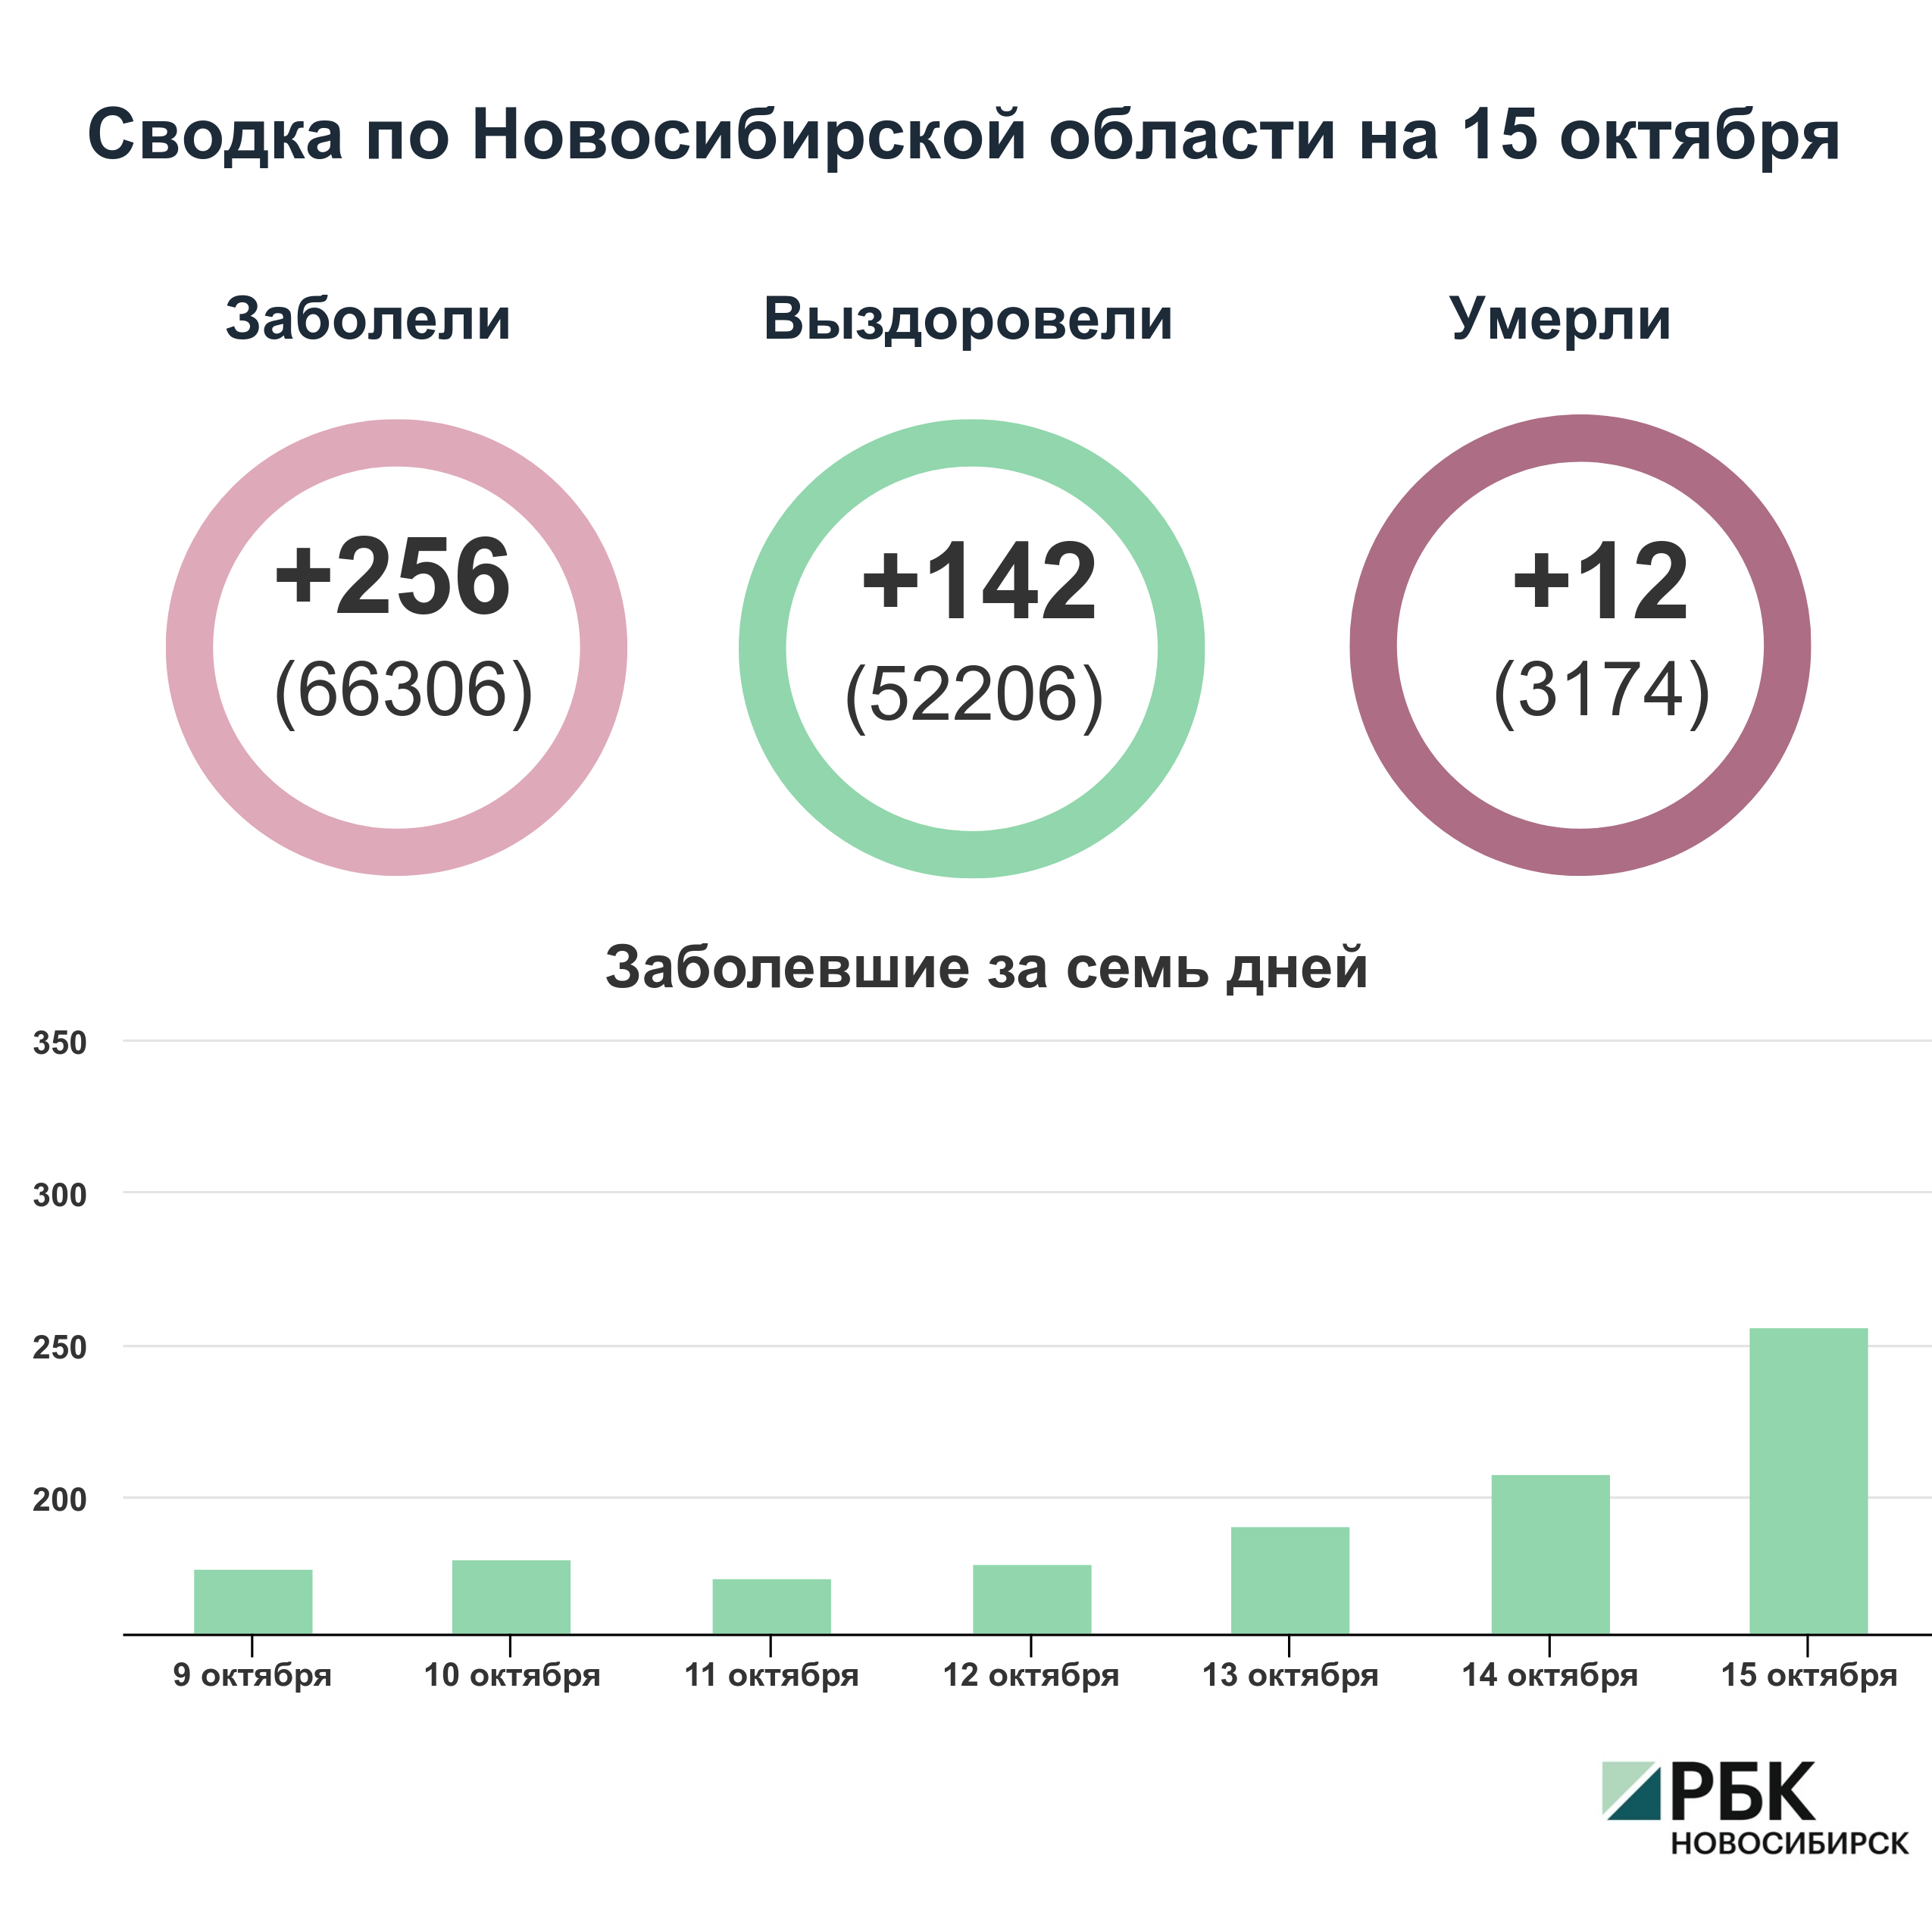 Коронавирус в Новосибирске: сводка на 15 октября